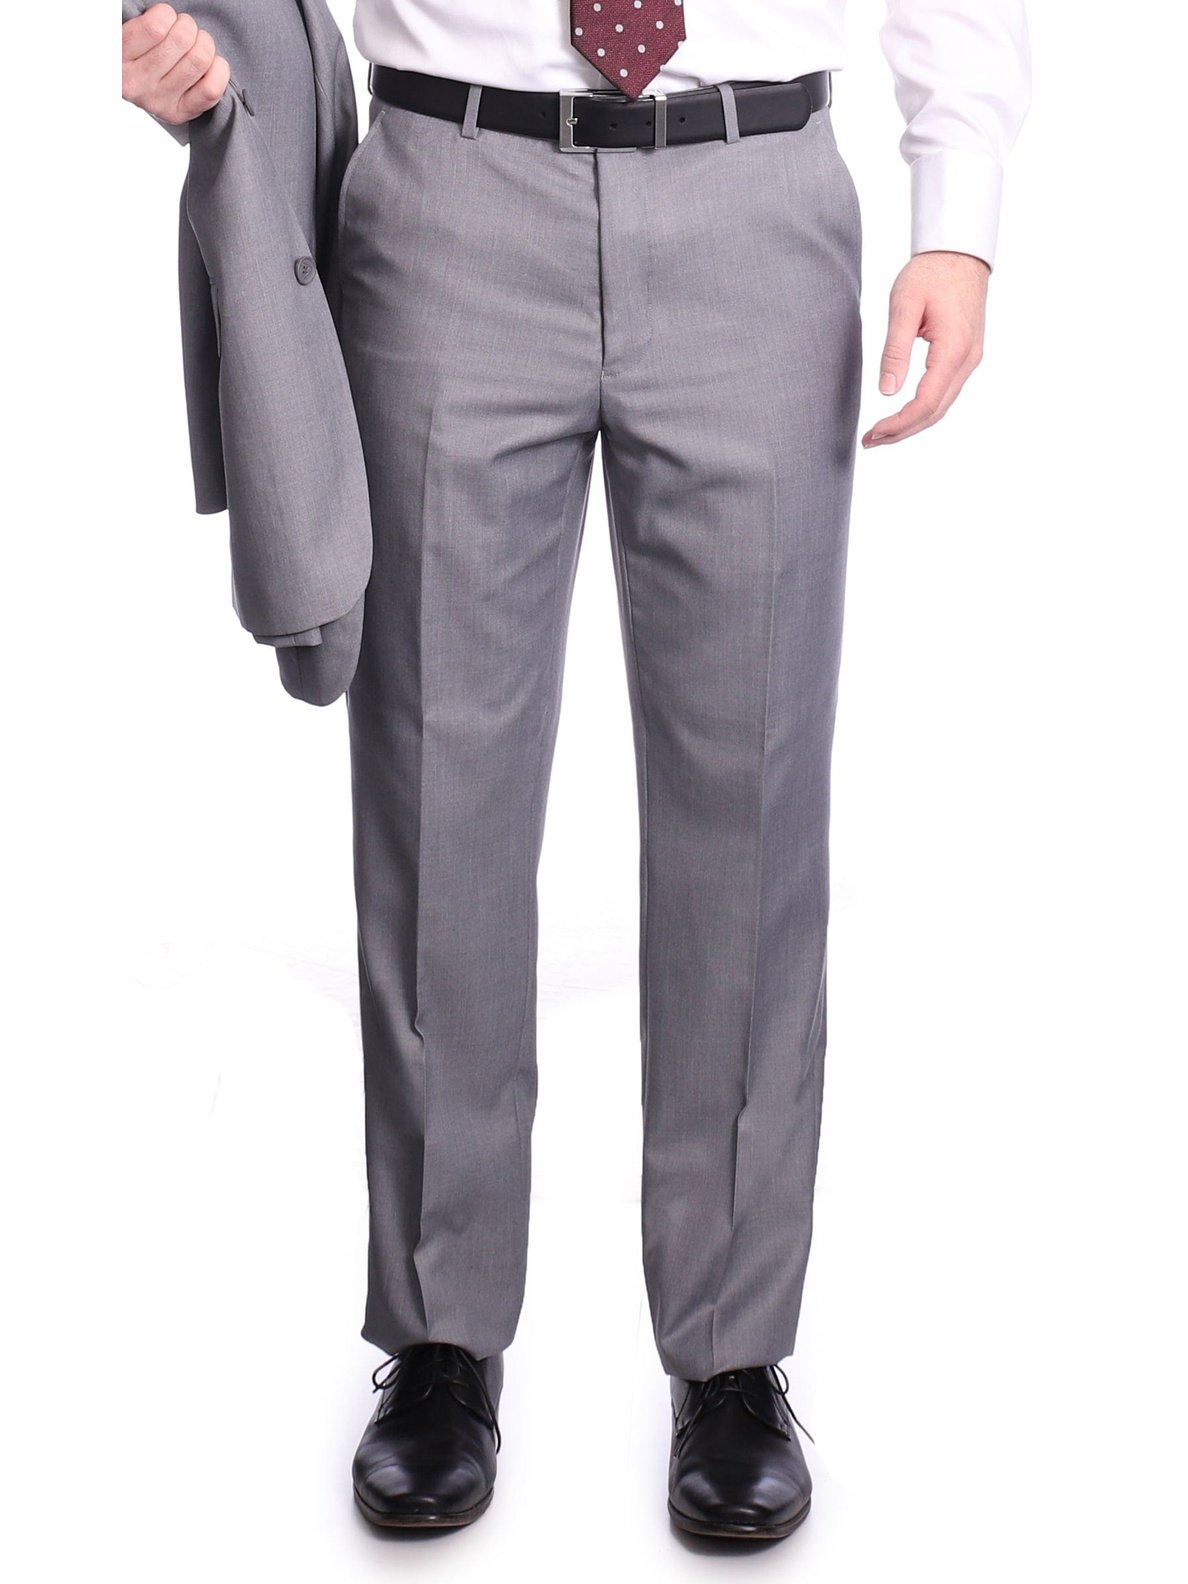 Raphael PANTS Raphael Men's Washable Flat Front Classic Fit Light Gray Dress Pants